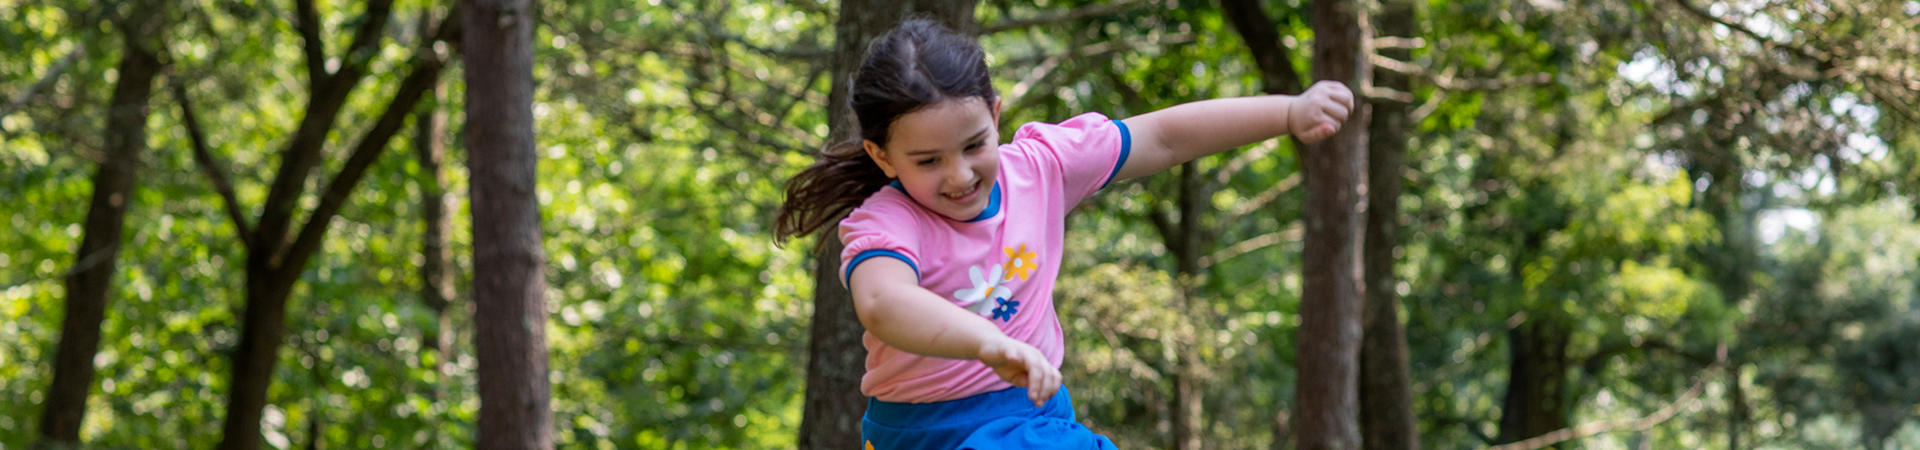  girl scout daisy joyfully running through a field 